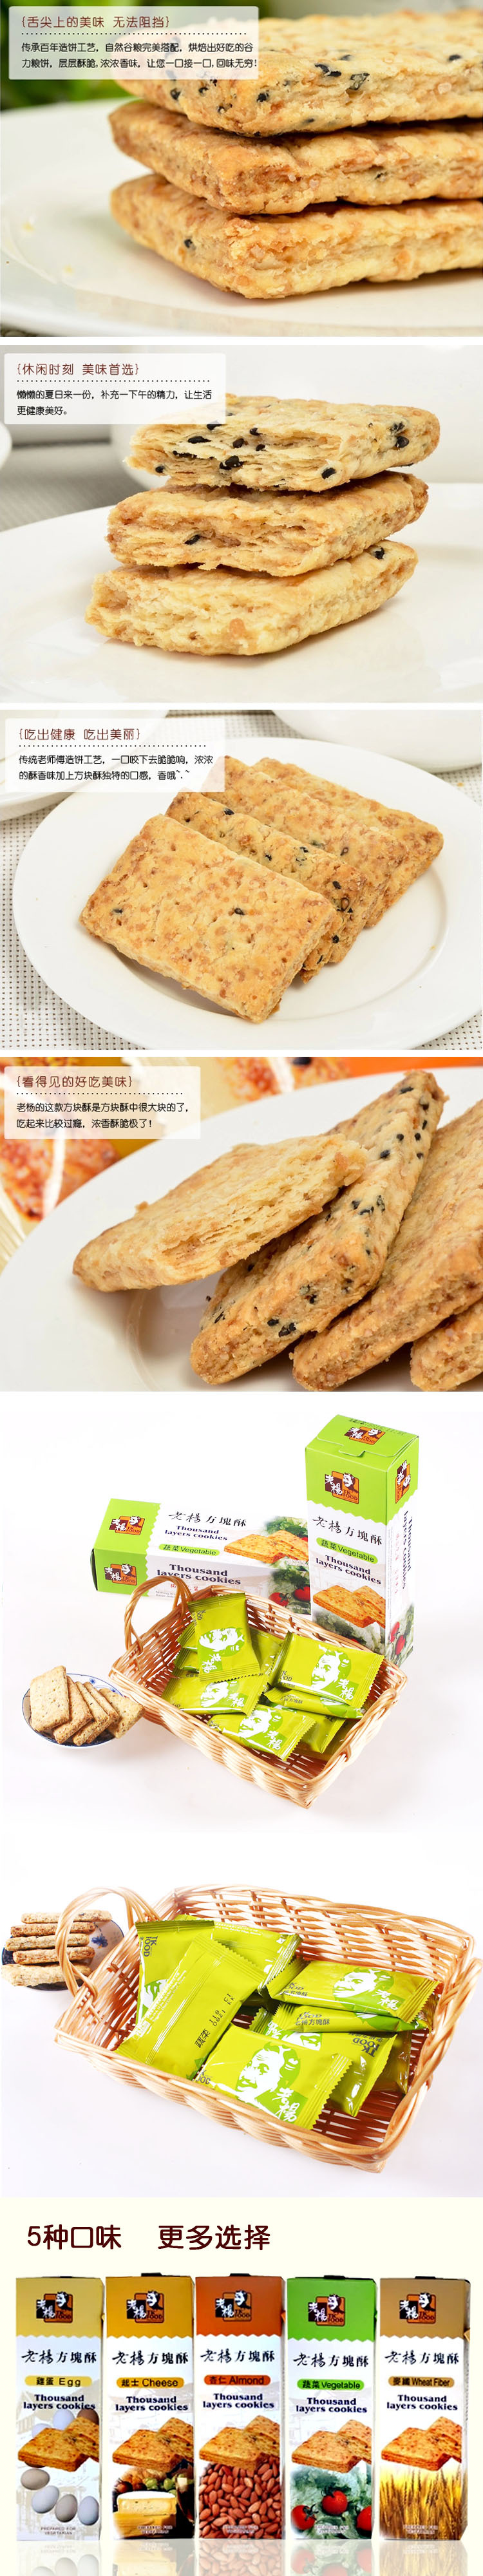 【伙拼】台湾进口食品批发老杨蔬菜方块酥嘉义名产台湾伴手礼零食